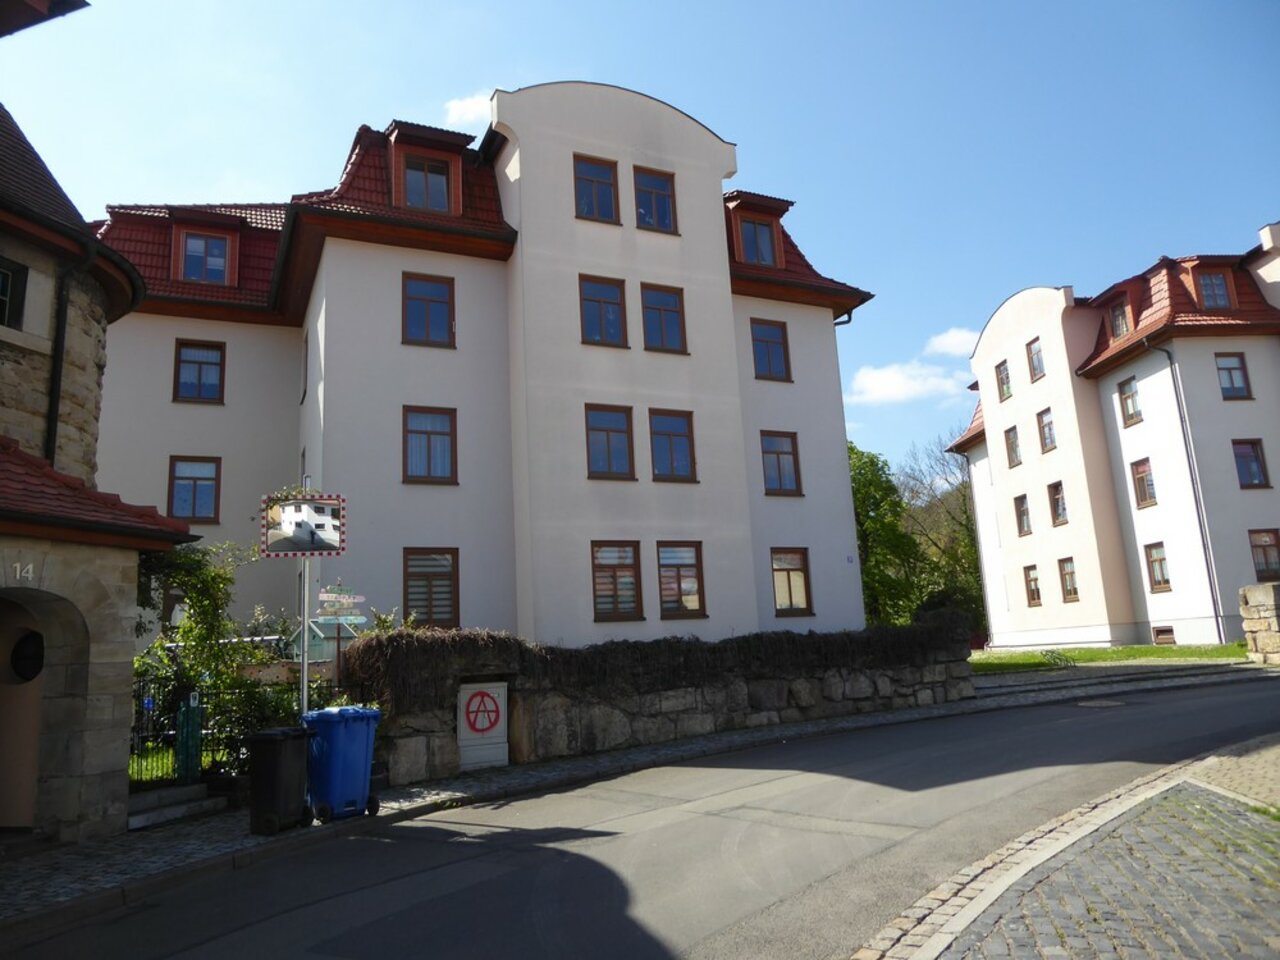 Vermietete Eigentumswohnung in beliebter Wohnlage von Arnstadt - eine interessante Anlage!-Hausansicht